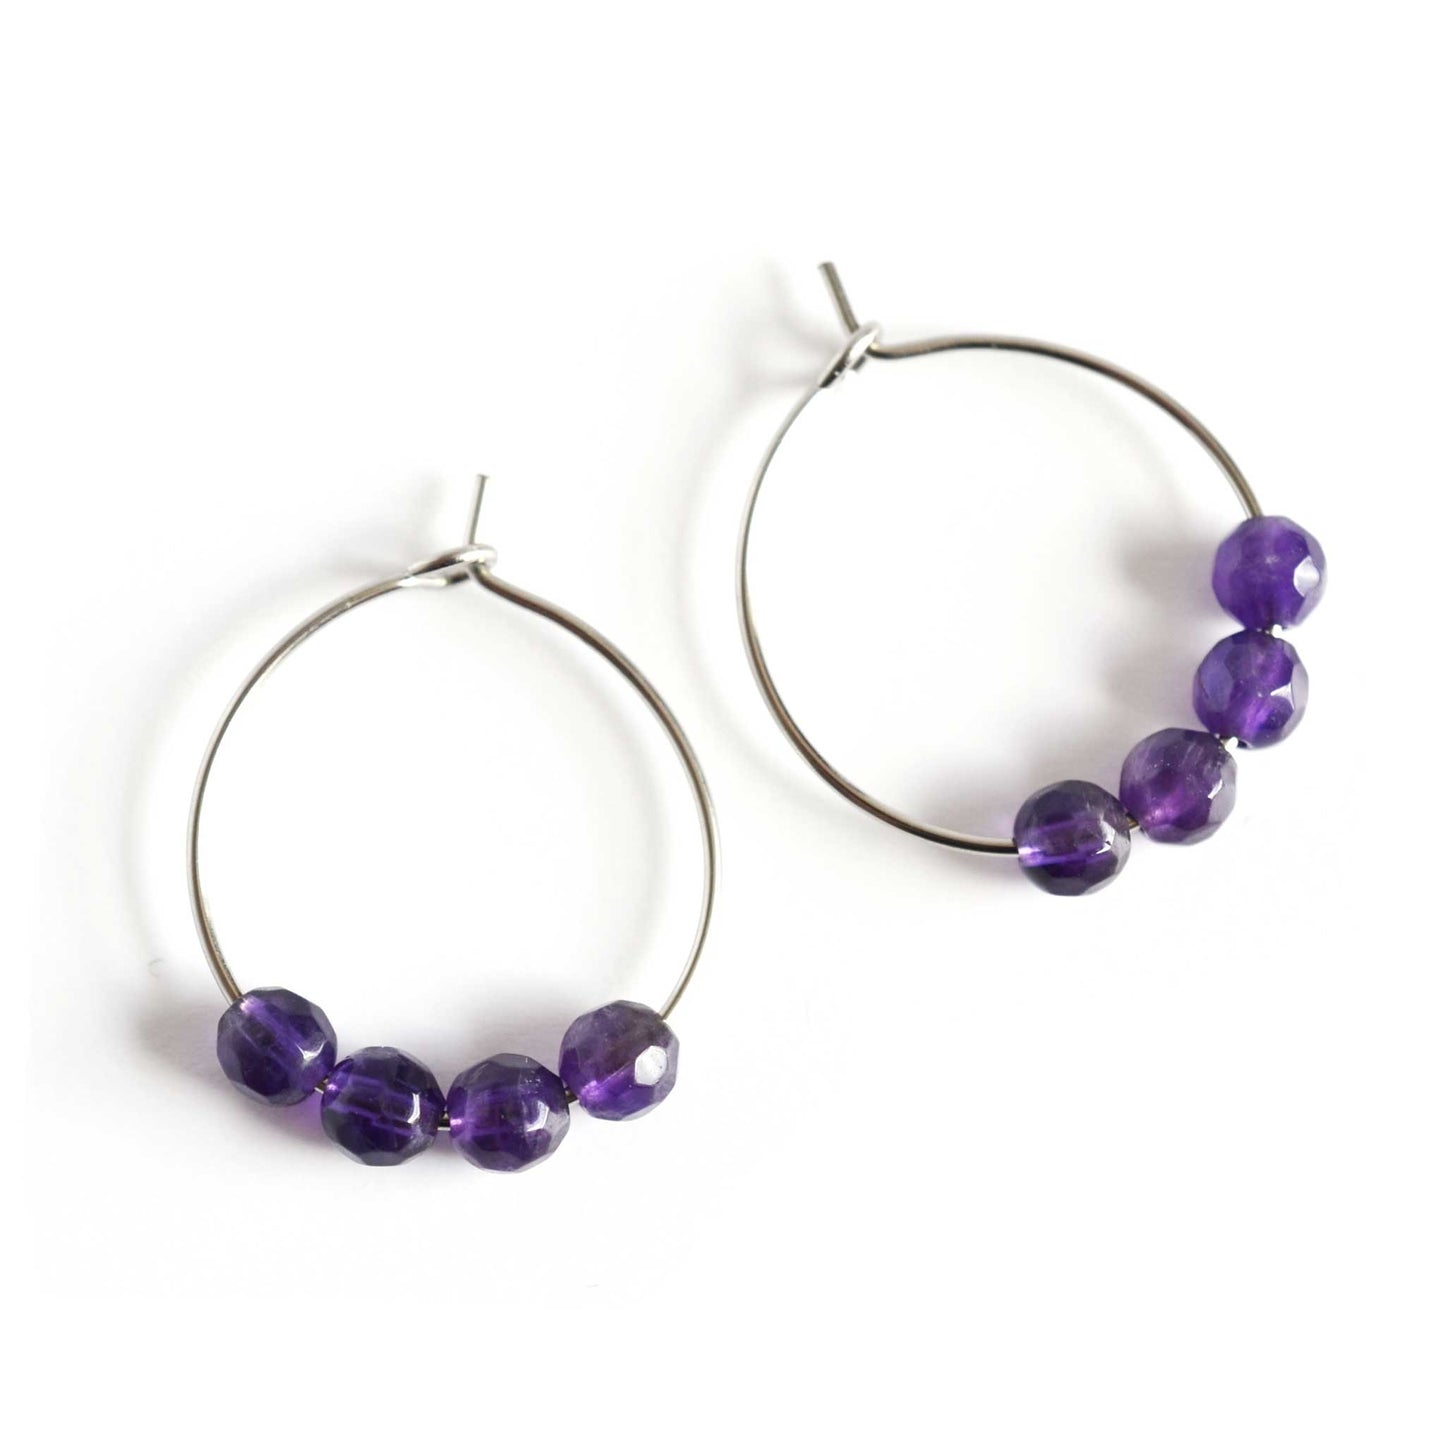 Pair of purple Amethyst hoop earrings with surgical steel hoops on white background